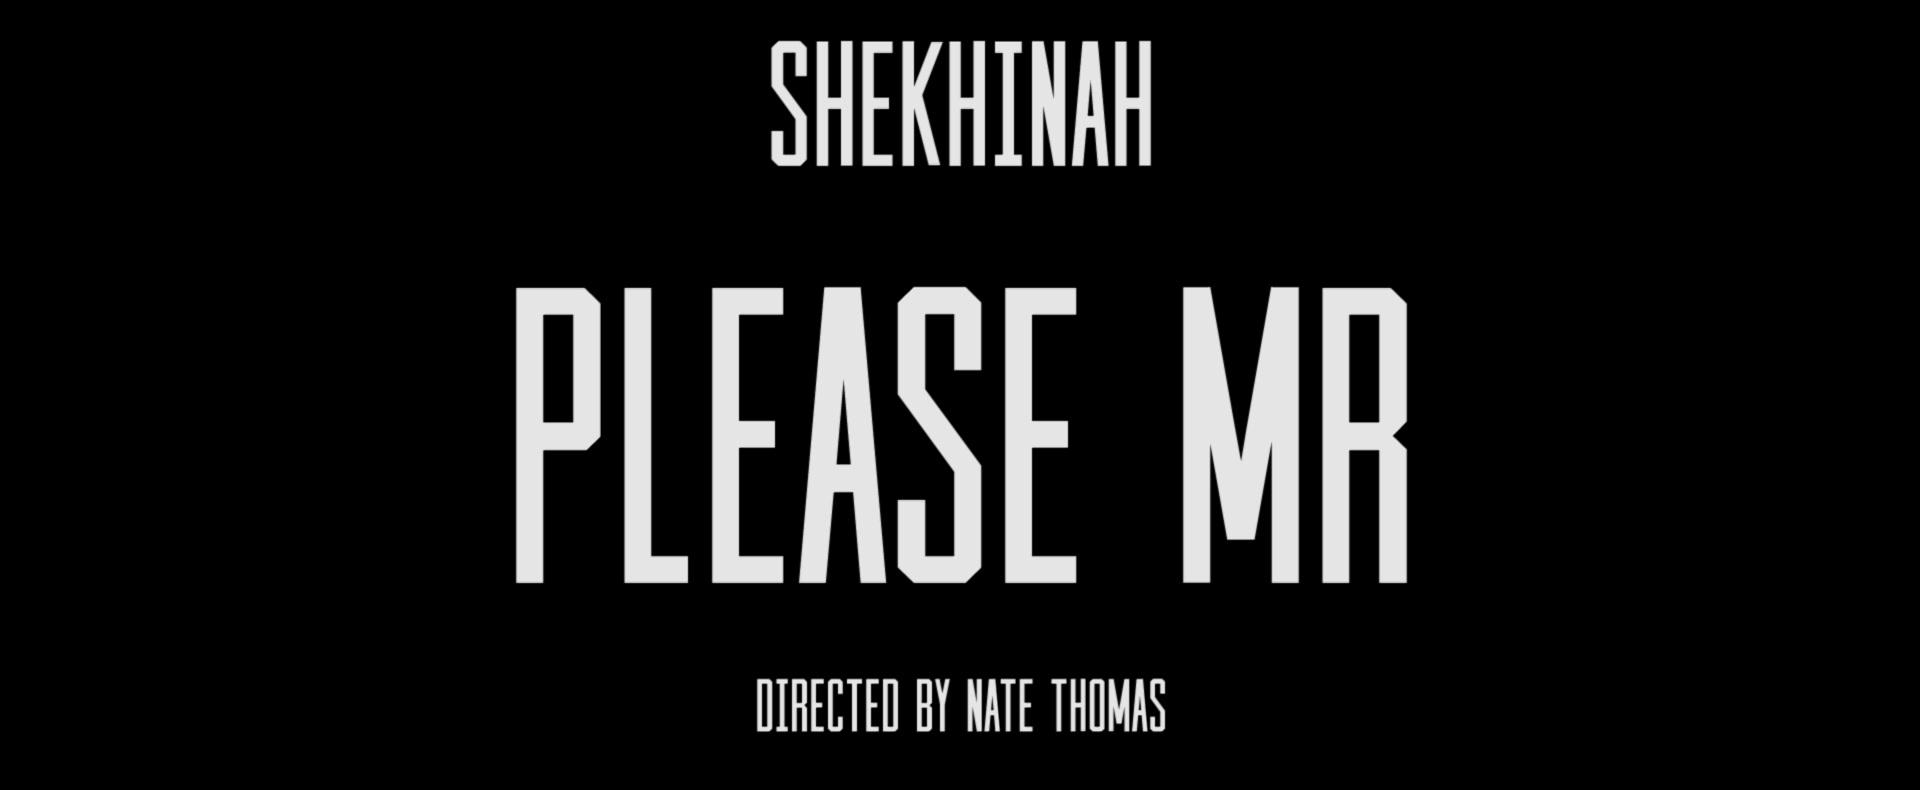 Shekhinah - Please Mr